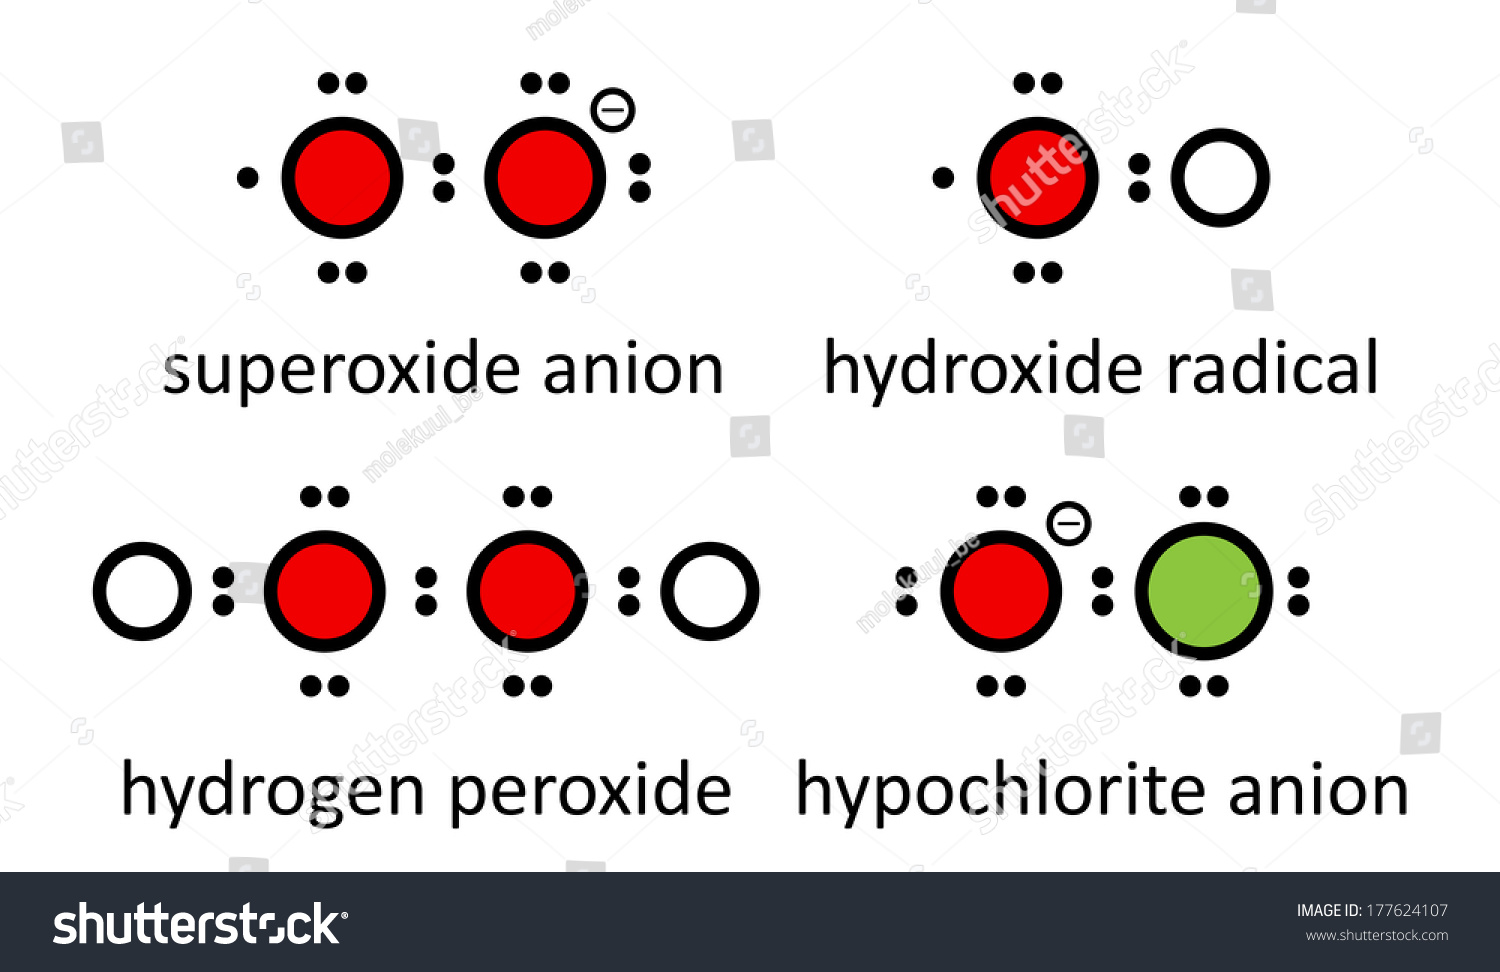 hydrogen peroxide dansk 2